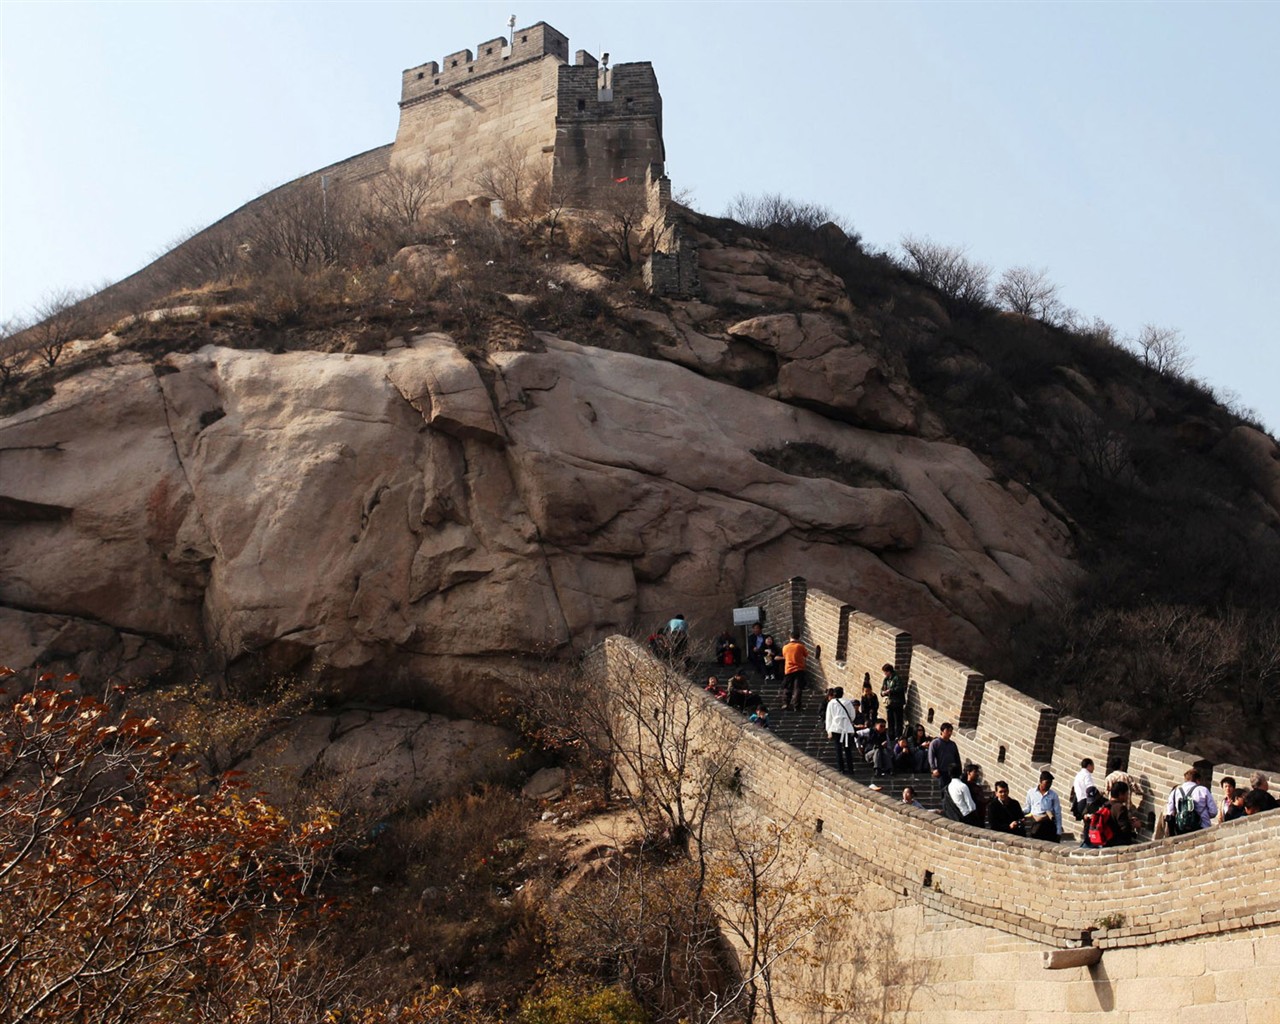 Beijing Tour - Badaling Great Wall (ggc works) #8 - 1280x1024